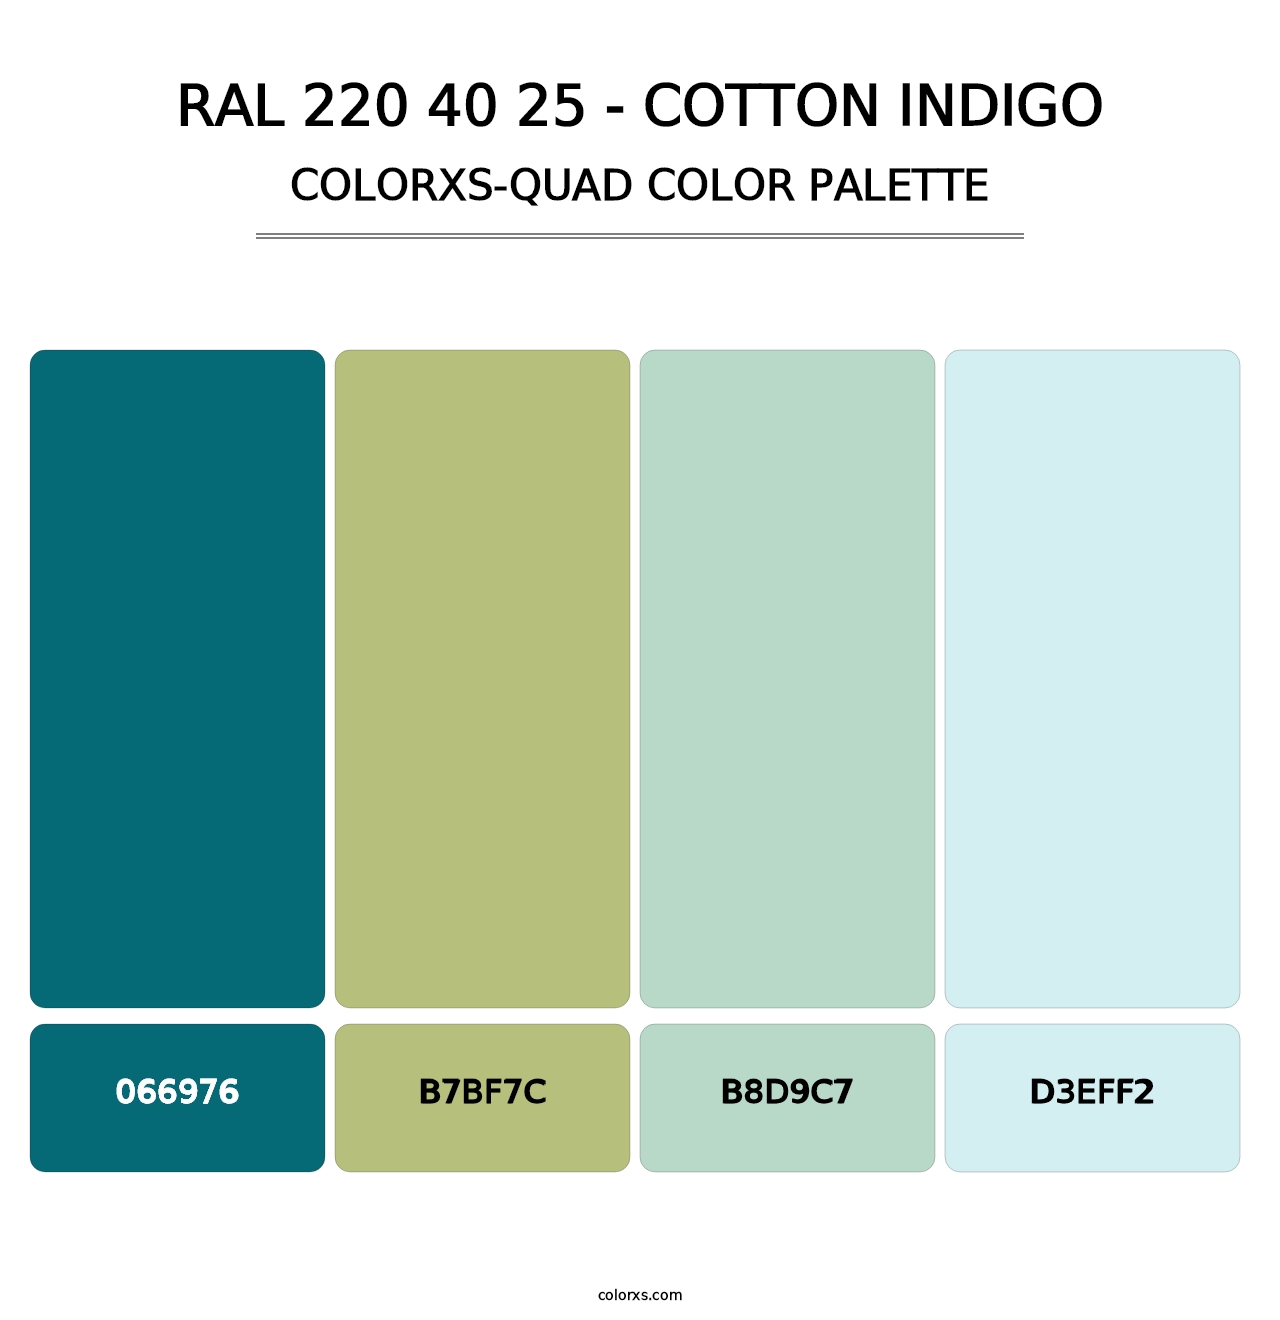 RAL 220 40 25 - Cotton Indigo - Colorxs Quad Palette